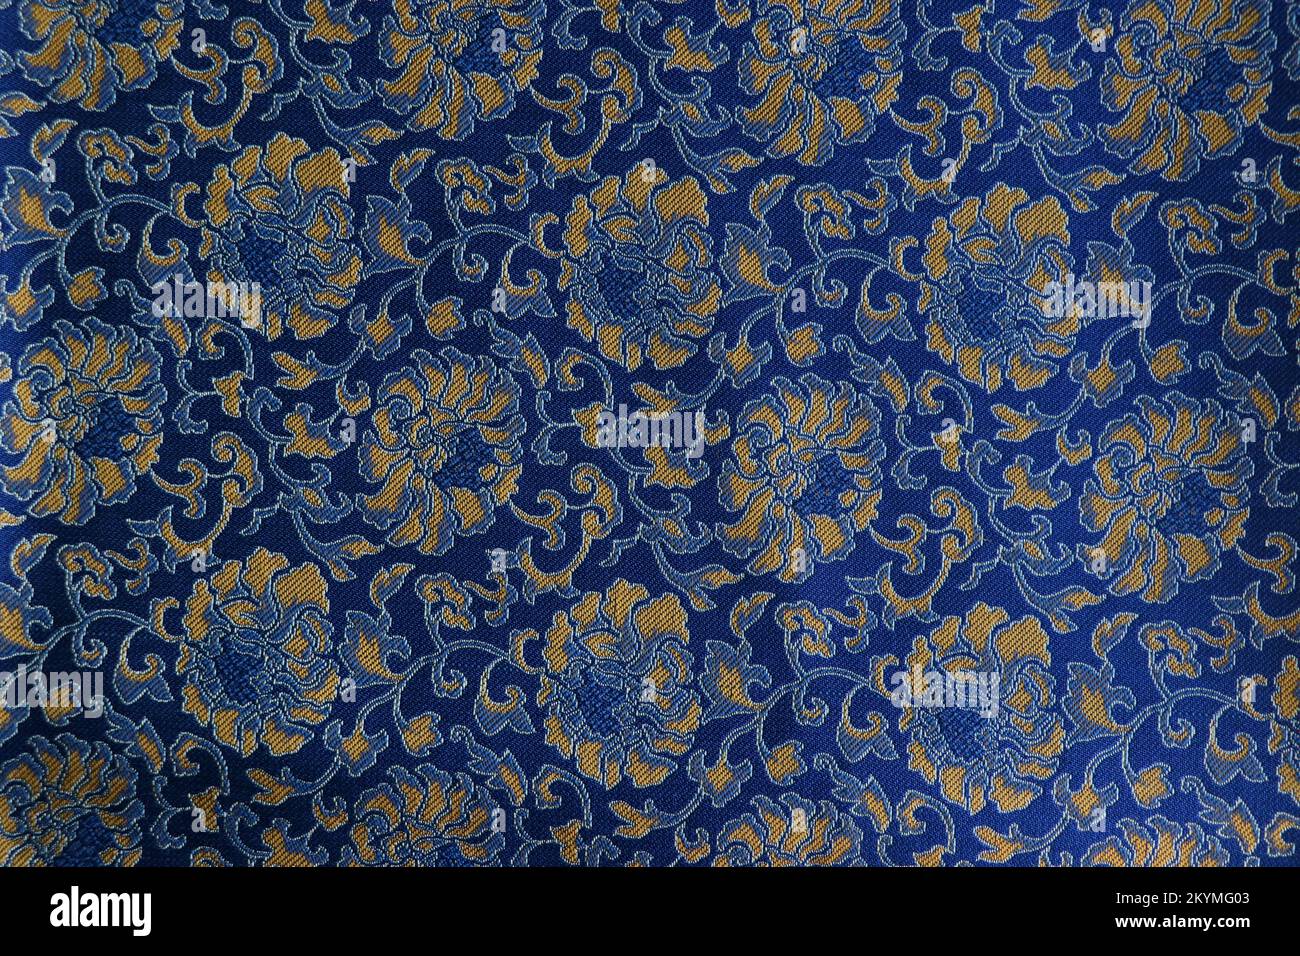 jin, Chinese precious silk fabric of suzhou call song jin Stock Photo